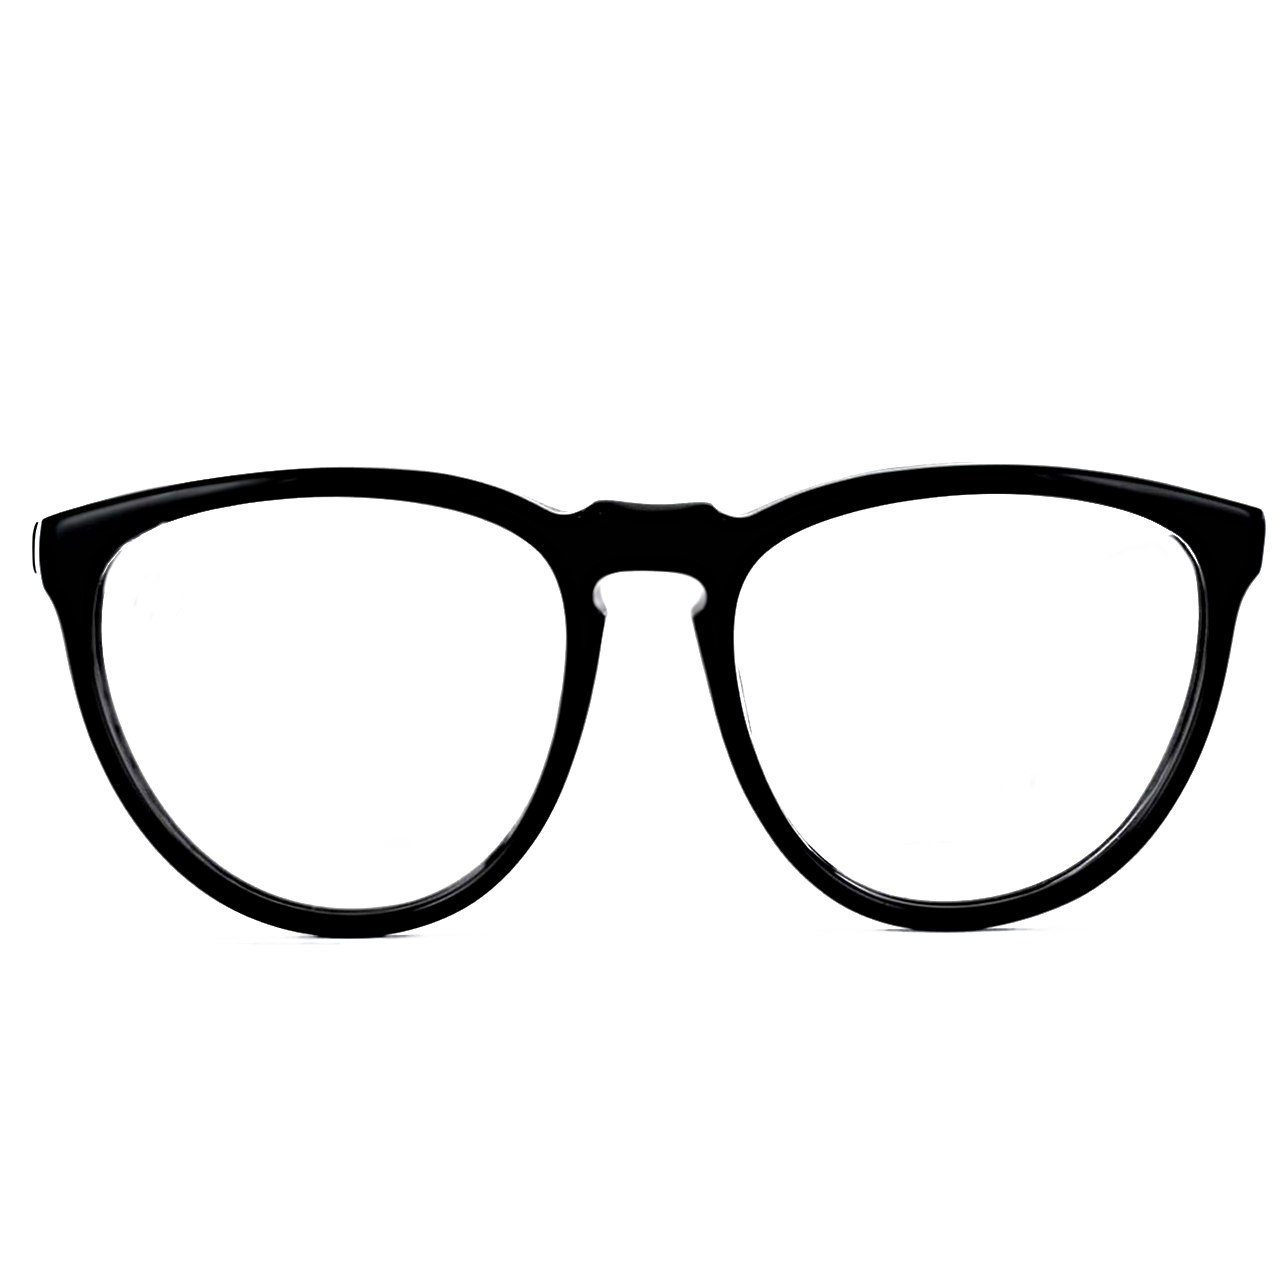 GEEK EYEWEAR® RX Eyeglasses Style SOPH | Sunglasses | Ready-To-Wear Fashion